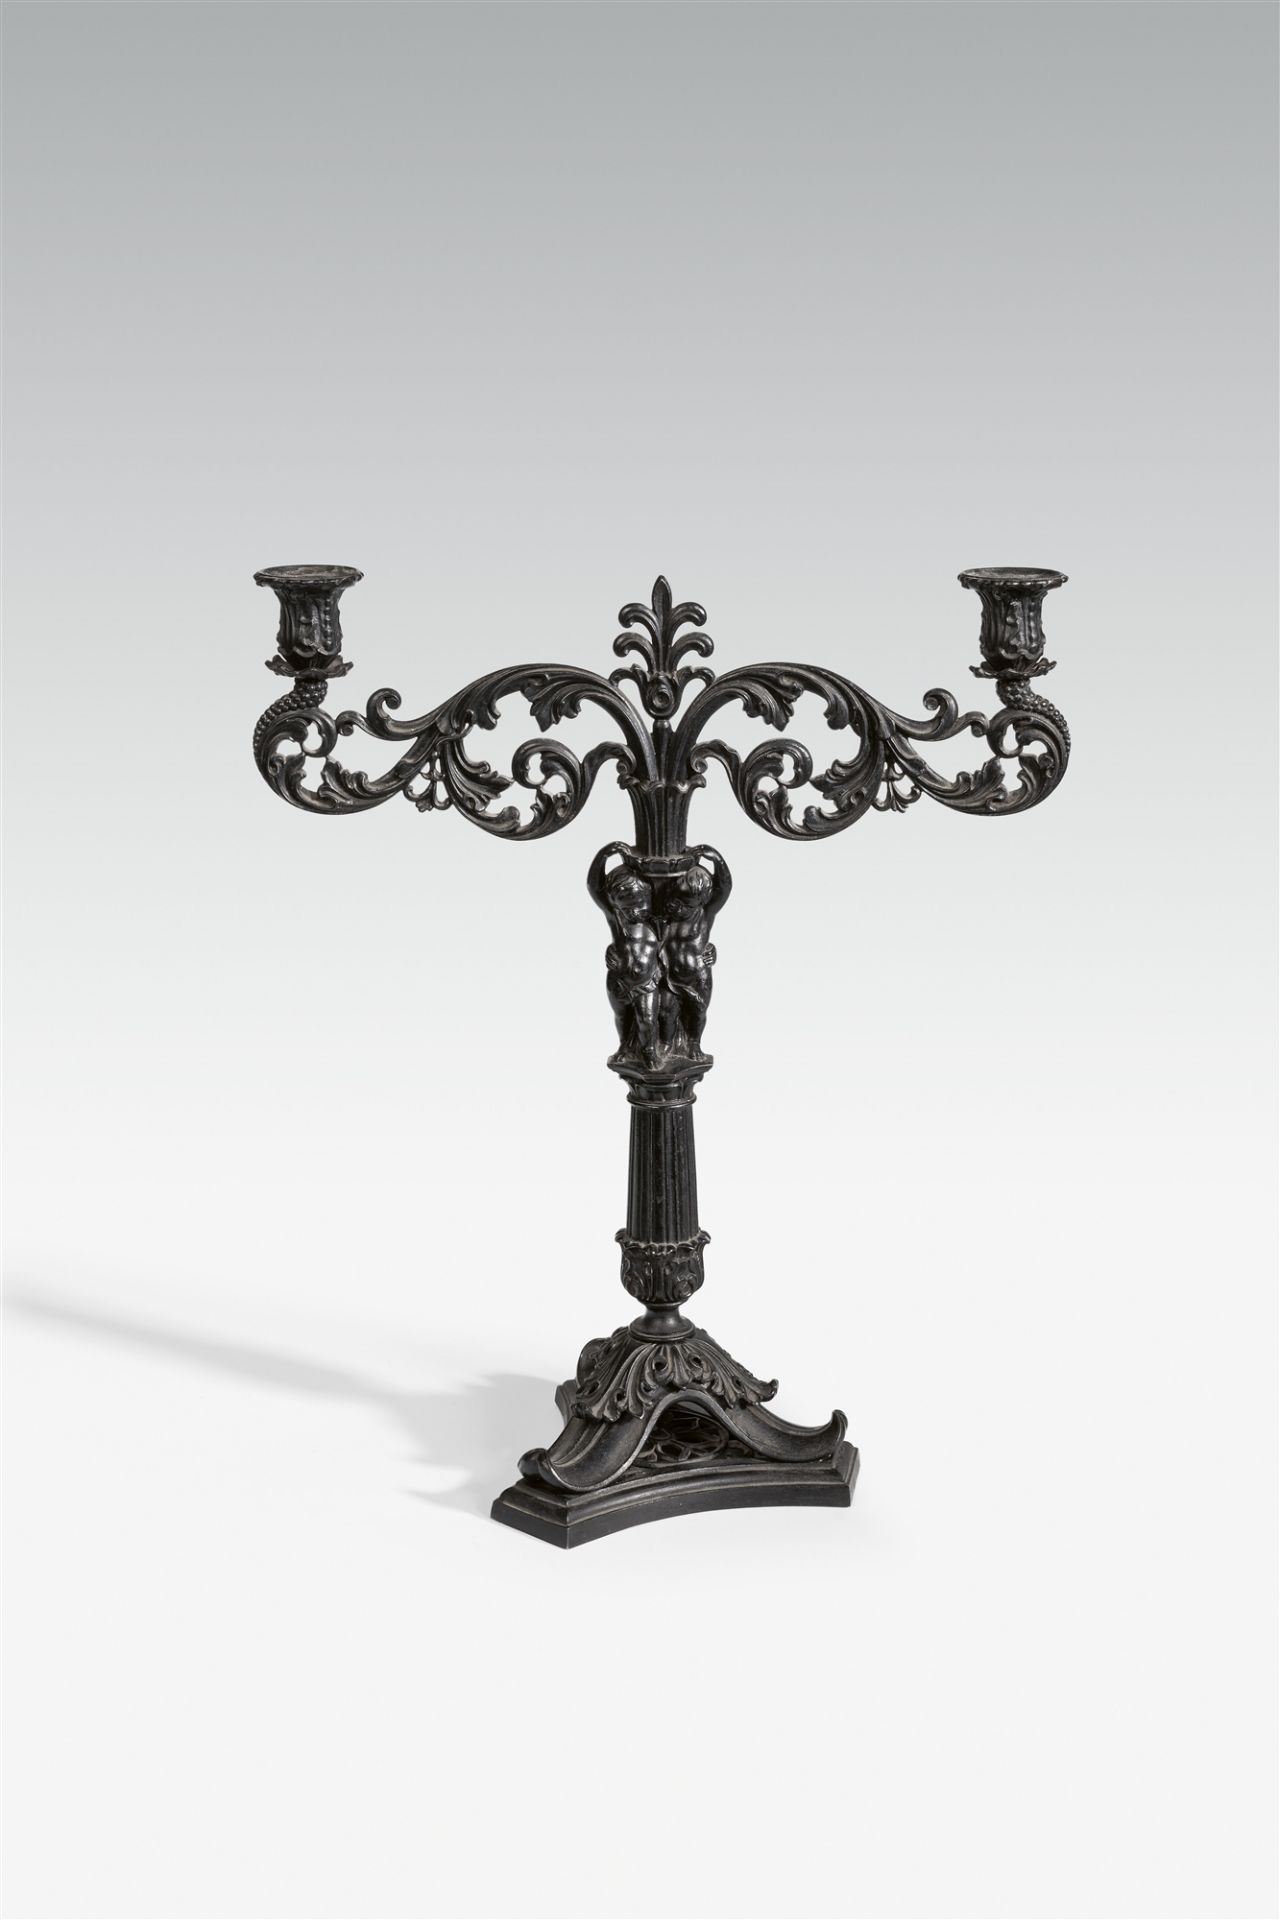 A cast iron candlestick